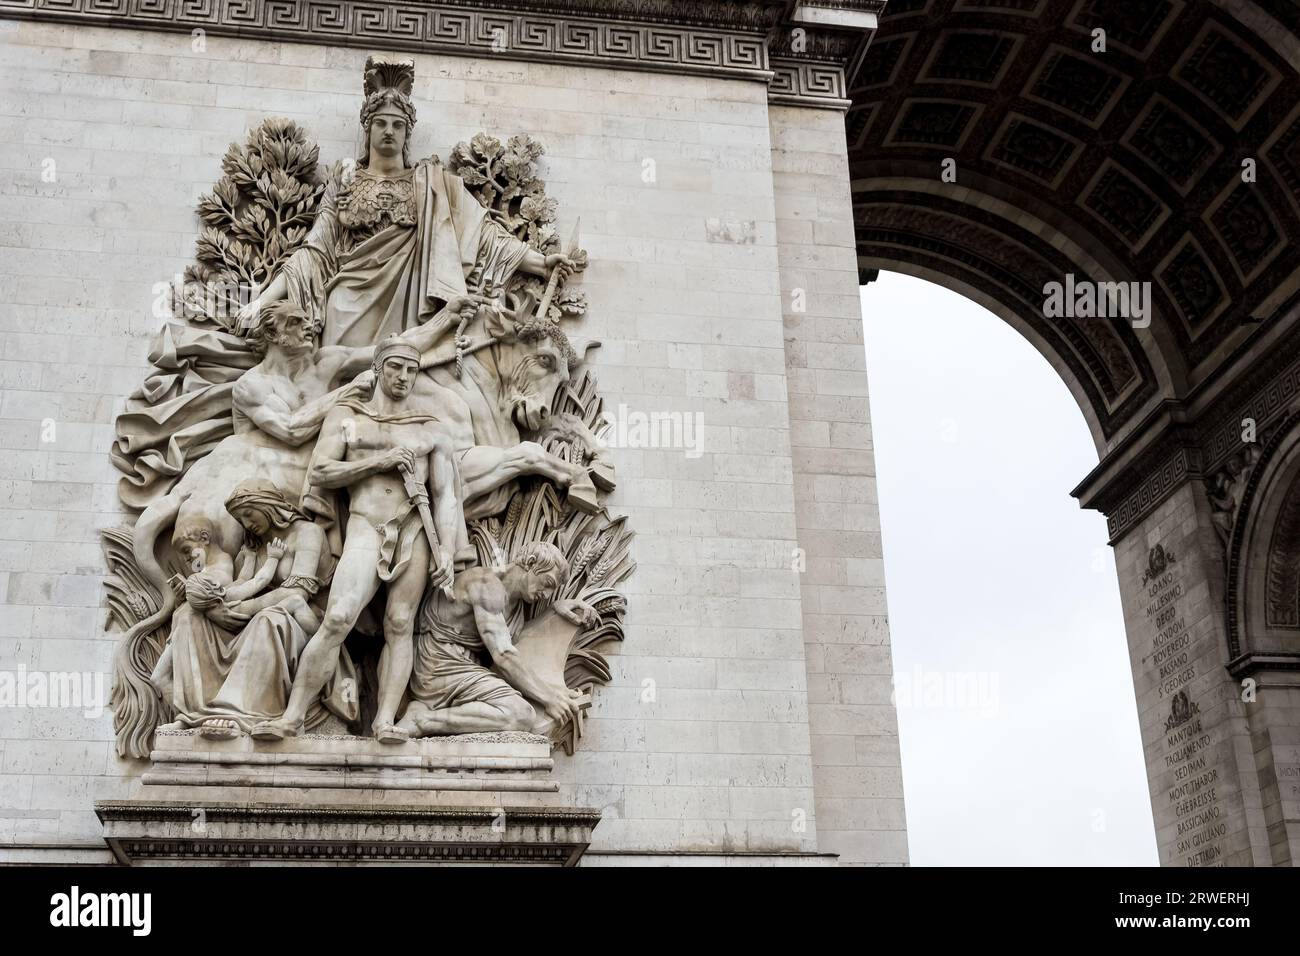 Arc de Triomphe de l'Étoile (Triumphal Arch of the Star), one of the most famous monuments in Paris, France, at the western end of the Champs-Élysées Stock Photo